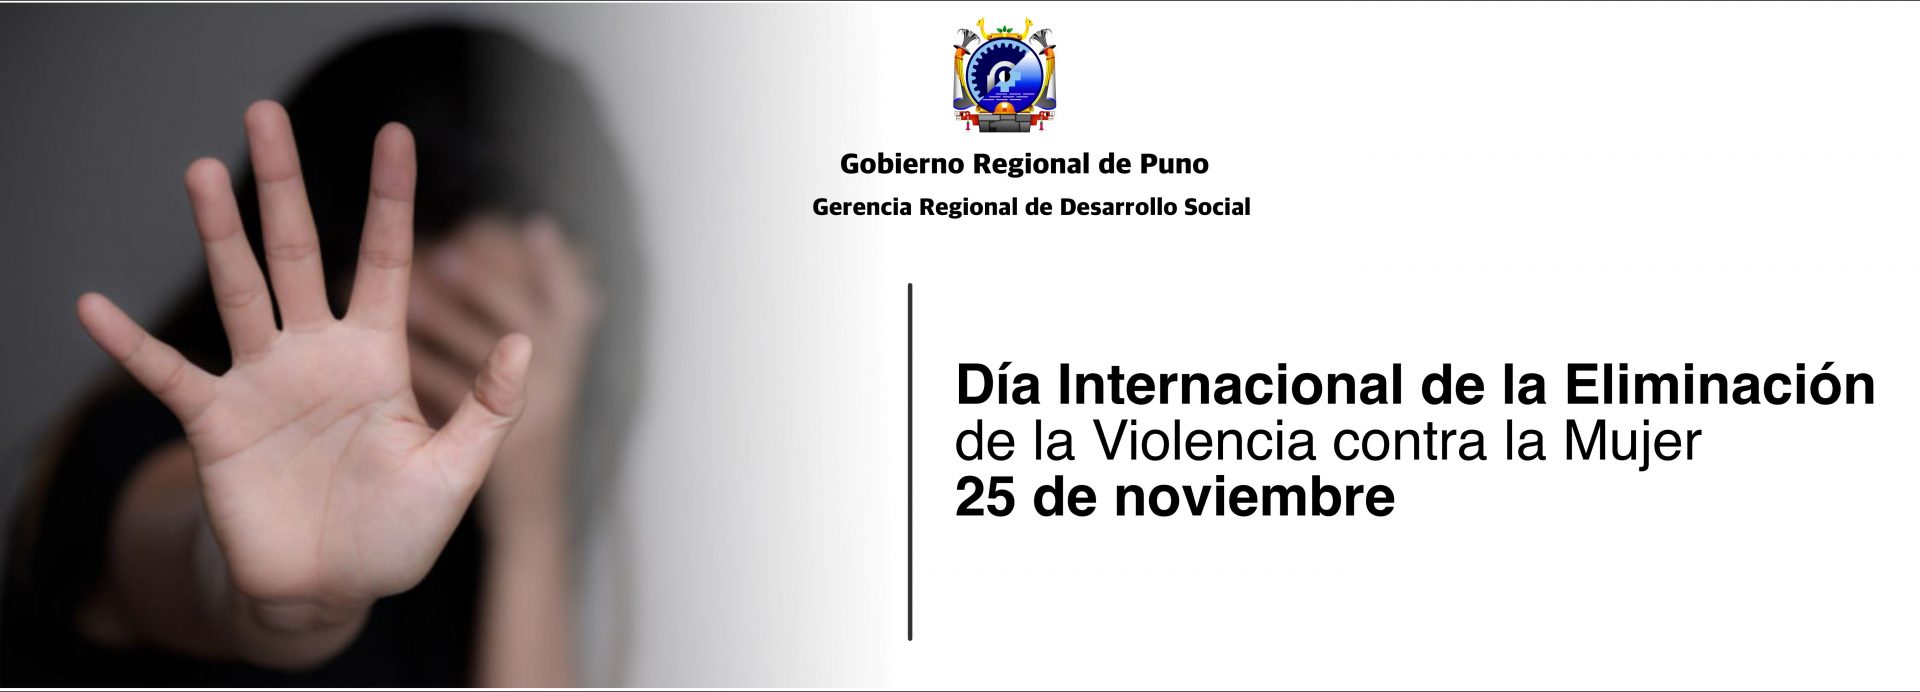 Día Internacional de la Eliminación de la Violencia contra la Mujer 25 de noviembre